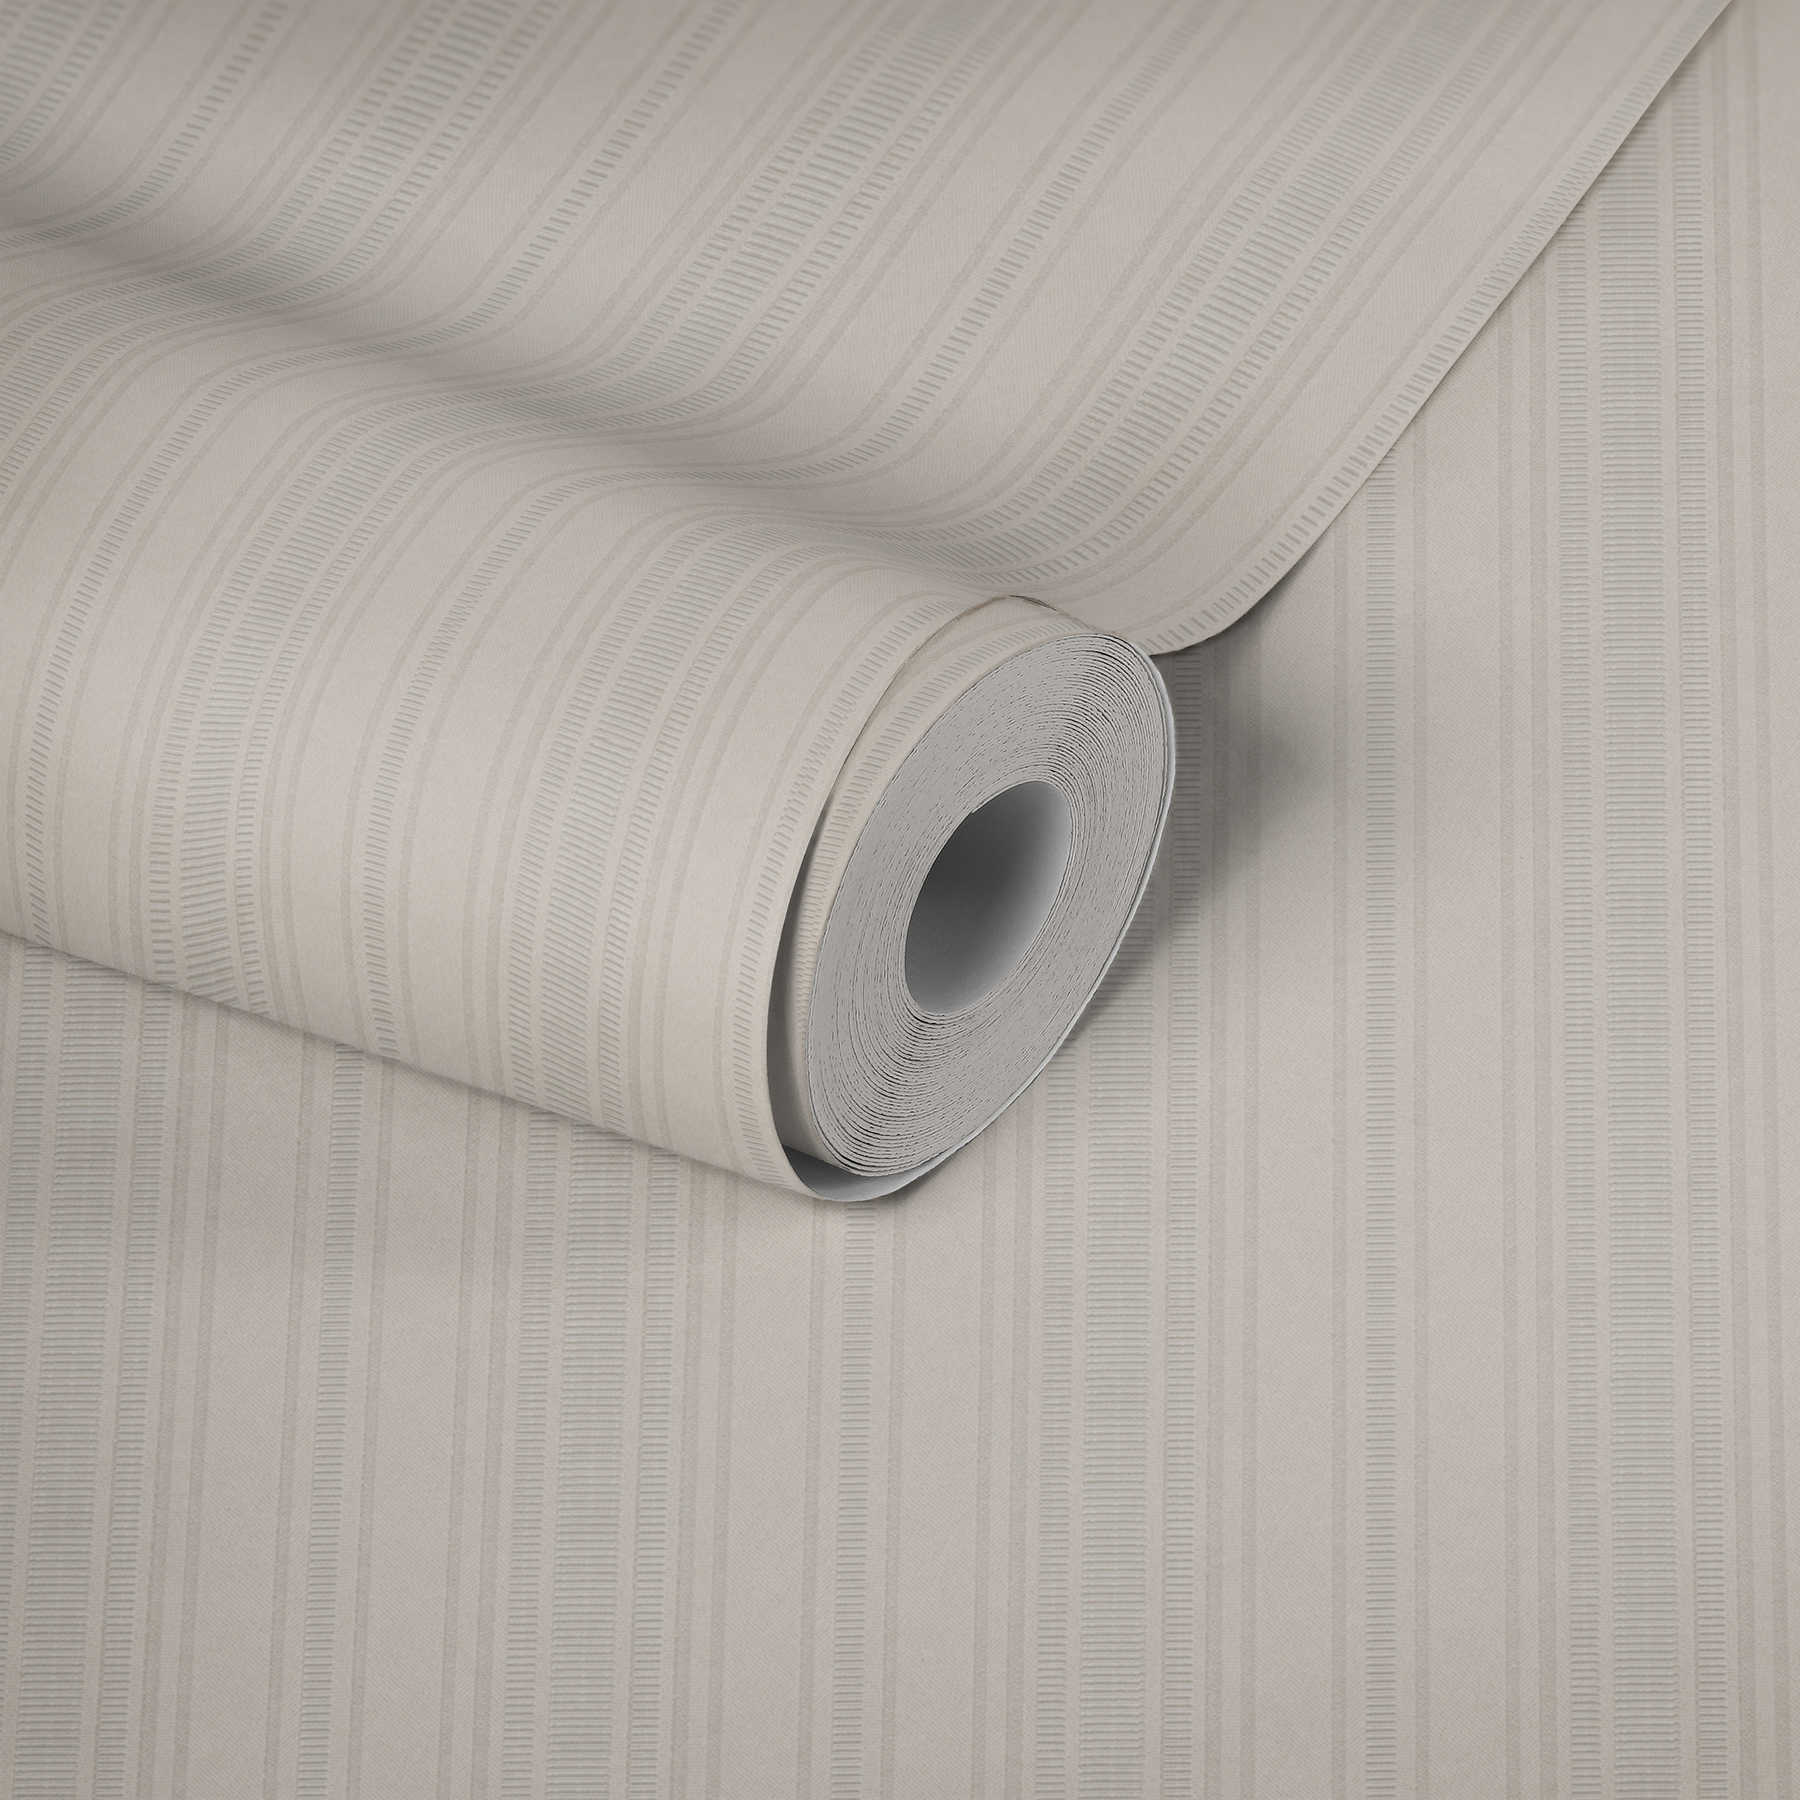             Crème-beige behang met streeppatroon & structuurdesign
        